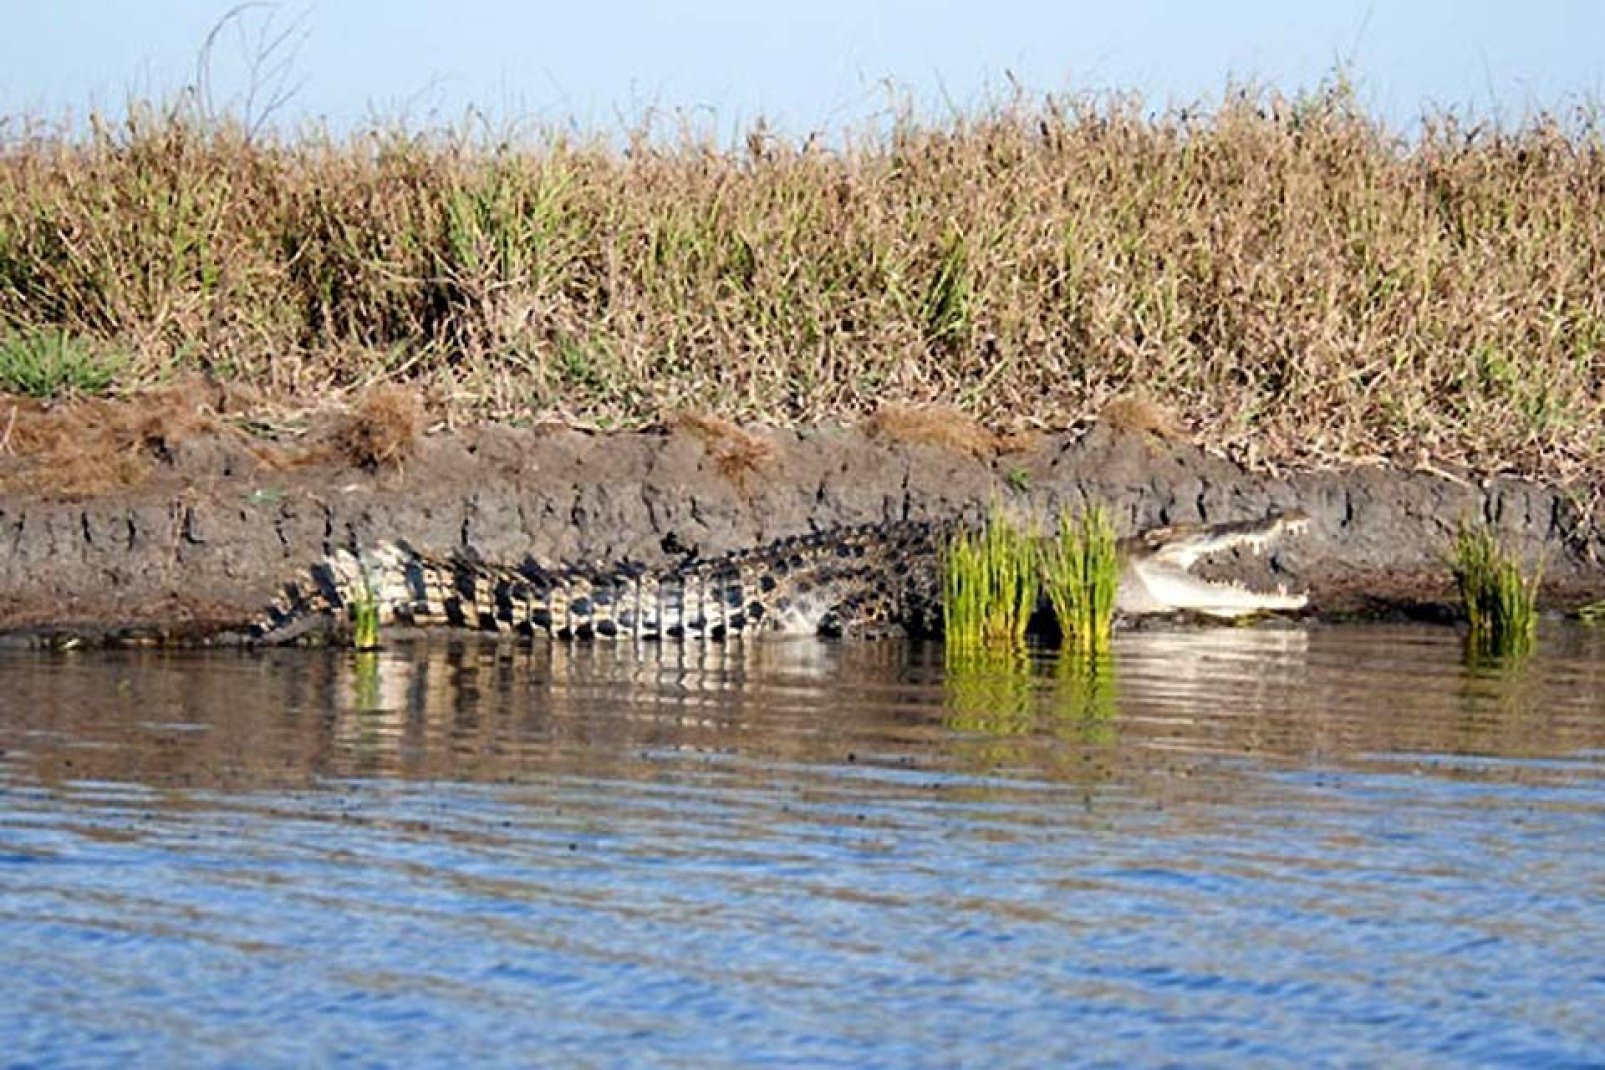 Das Krokodil gehört zu den gefährlichsten Tierarten. In Südafrika ist es weit verbreitet.